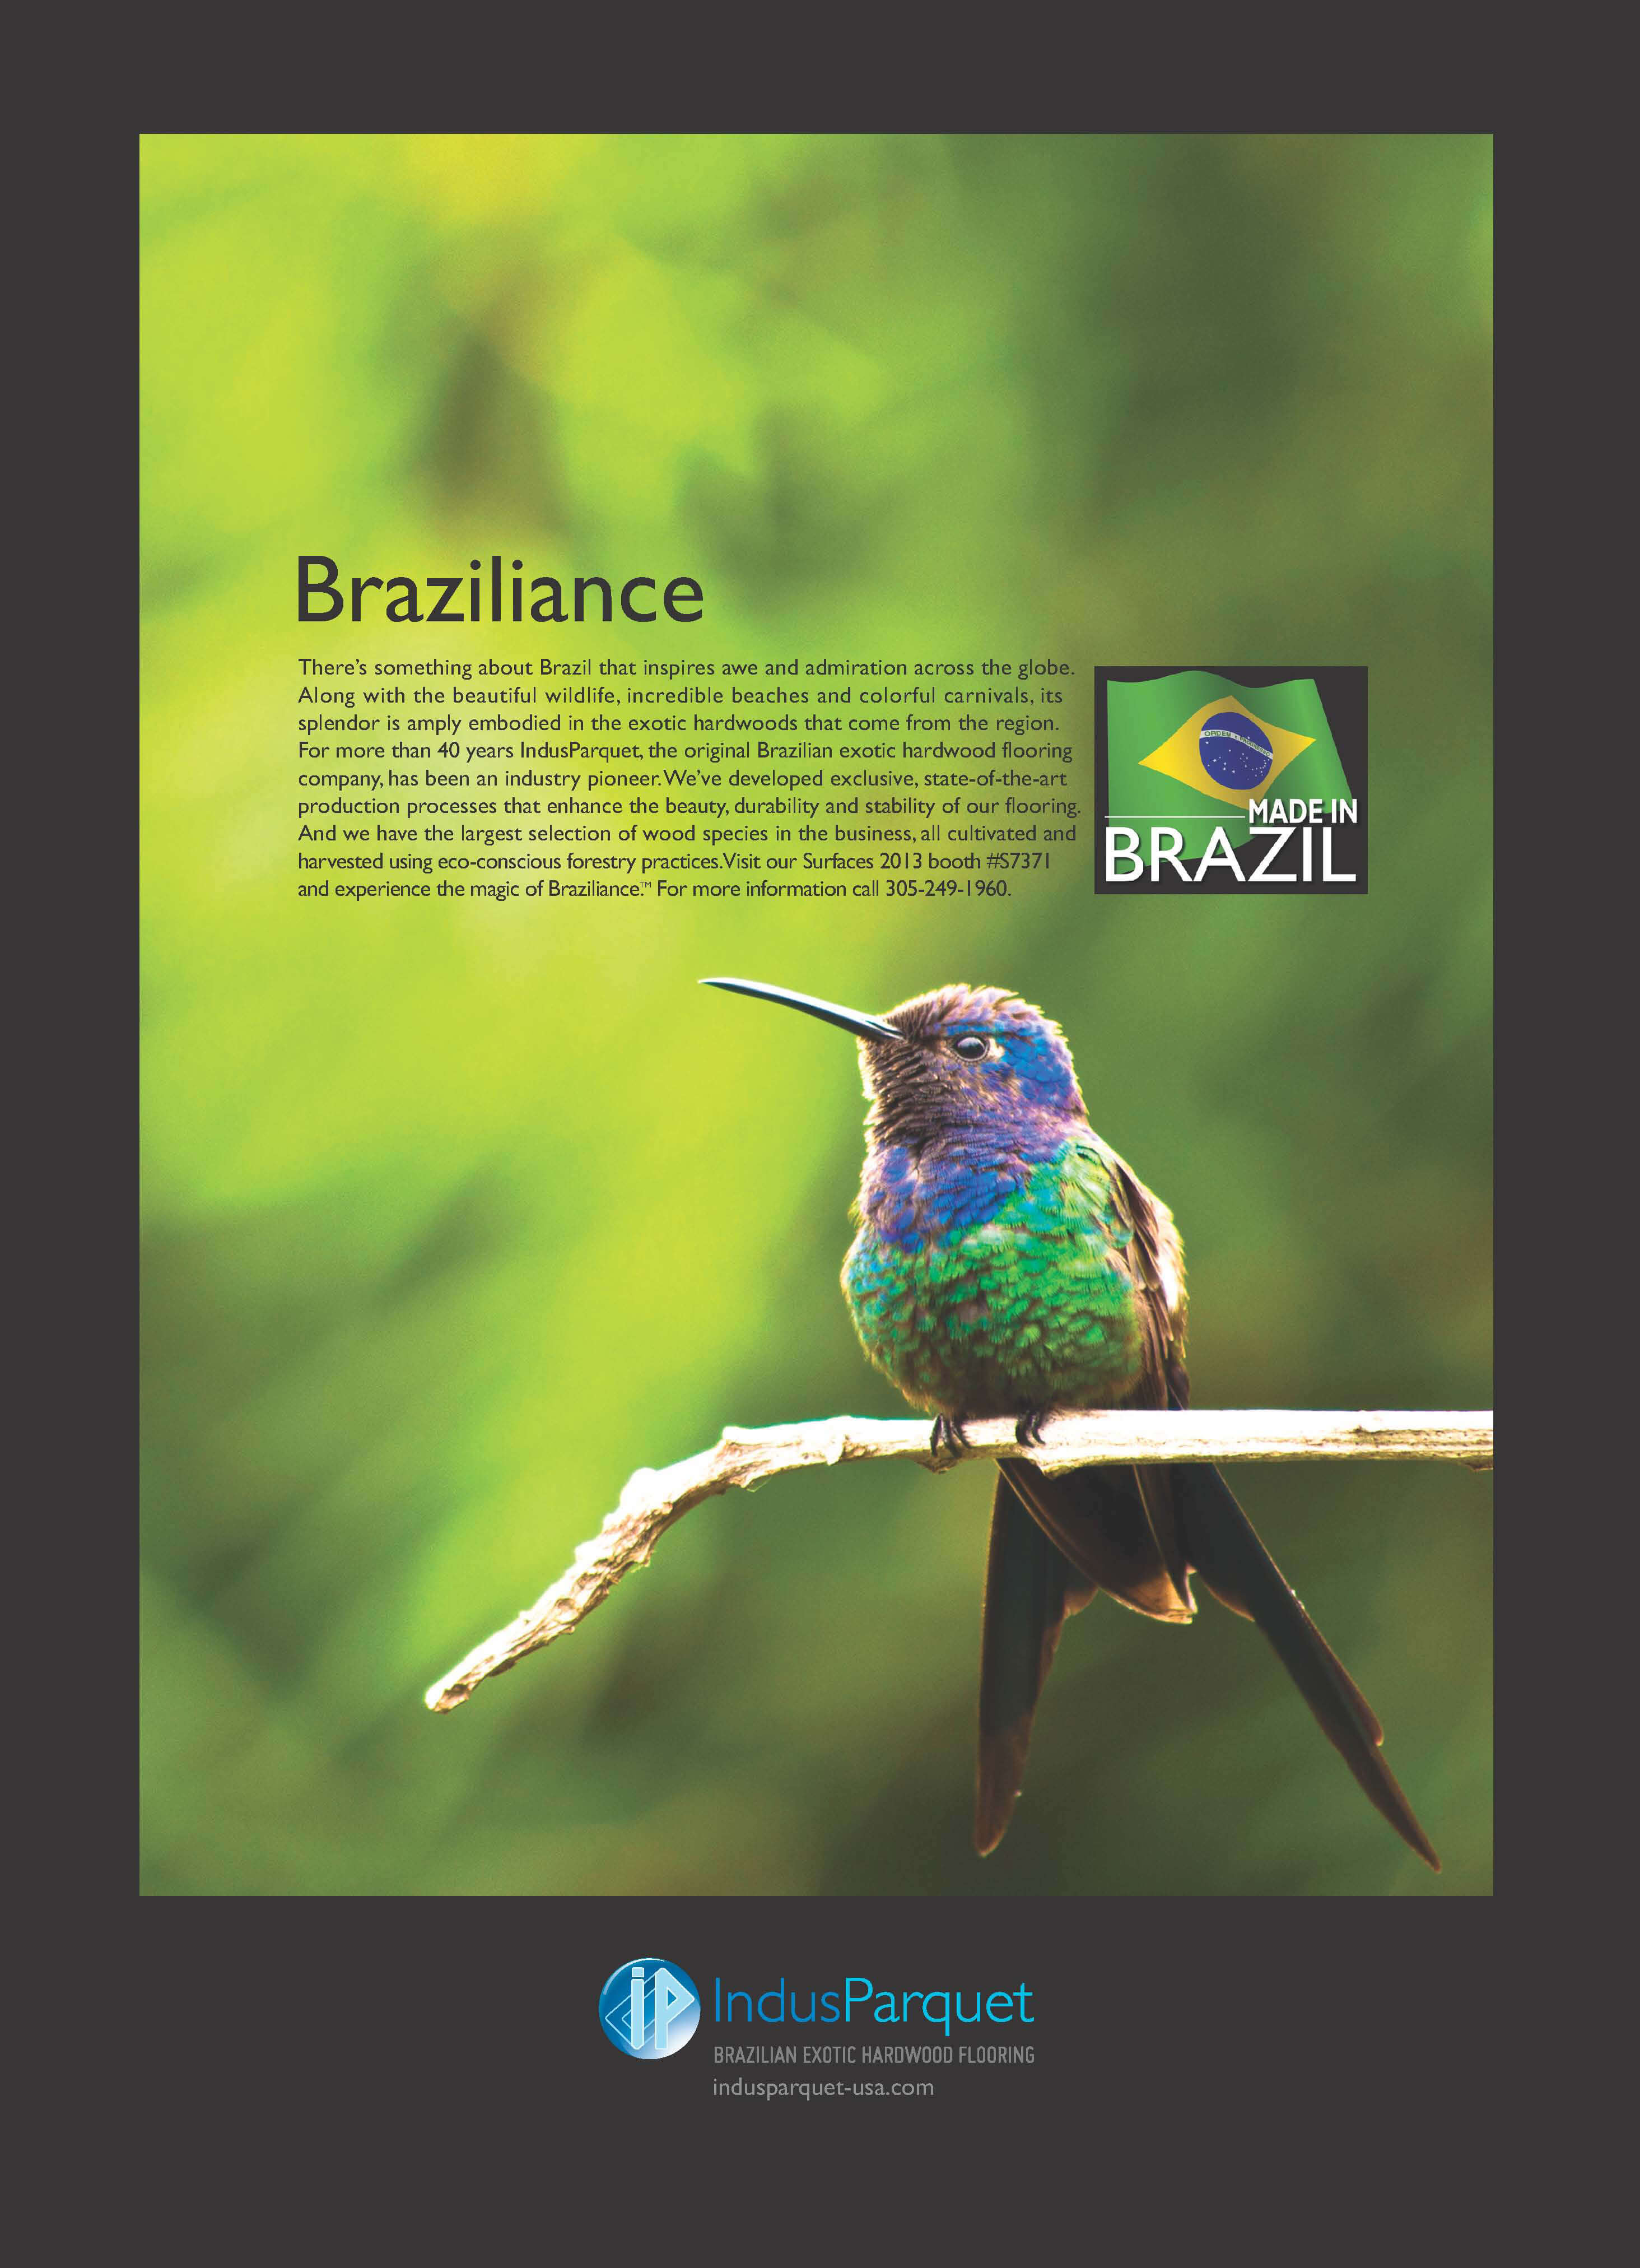 Merlot Marketing Braziliance Advertisement